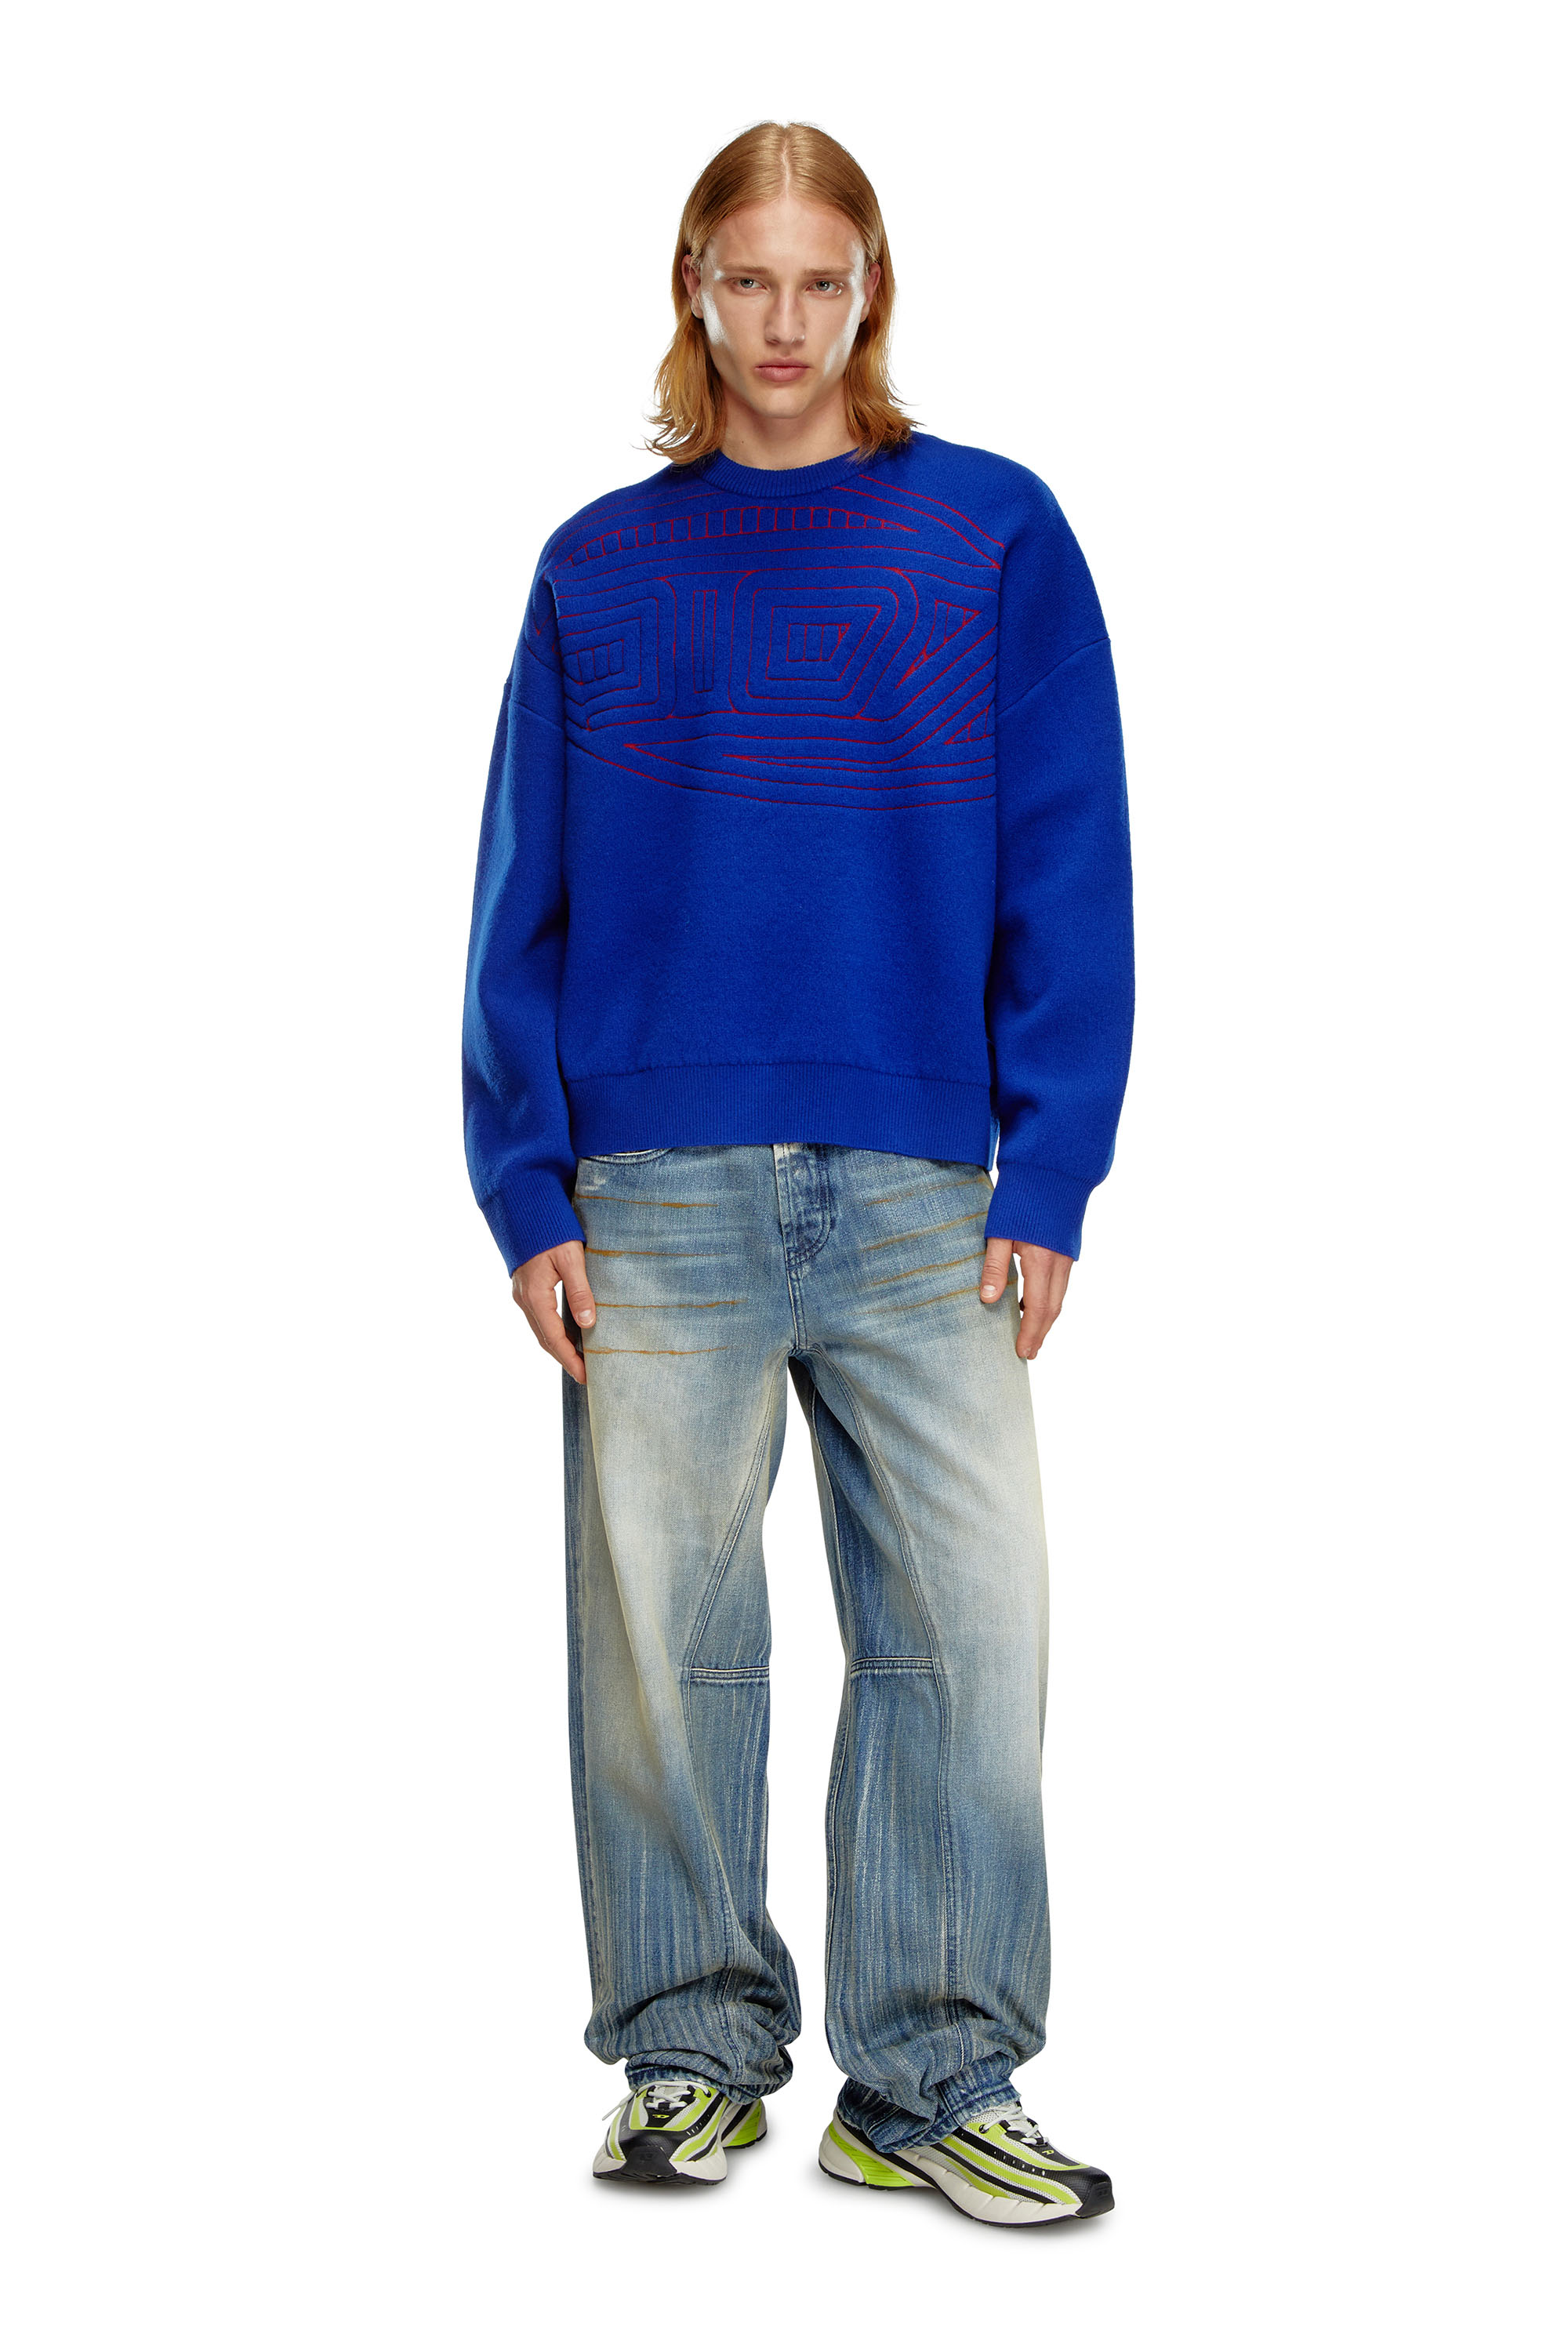 Diesel - K-RATIO, Hombre Jersey de mezcla de lana con logotipo gráfico in Azul marino - Image 2